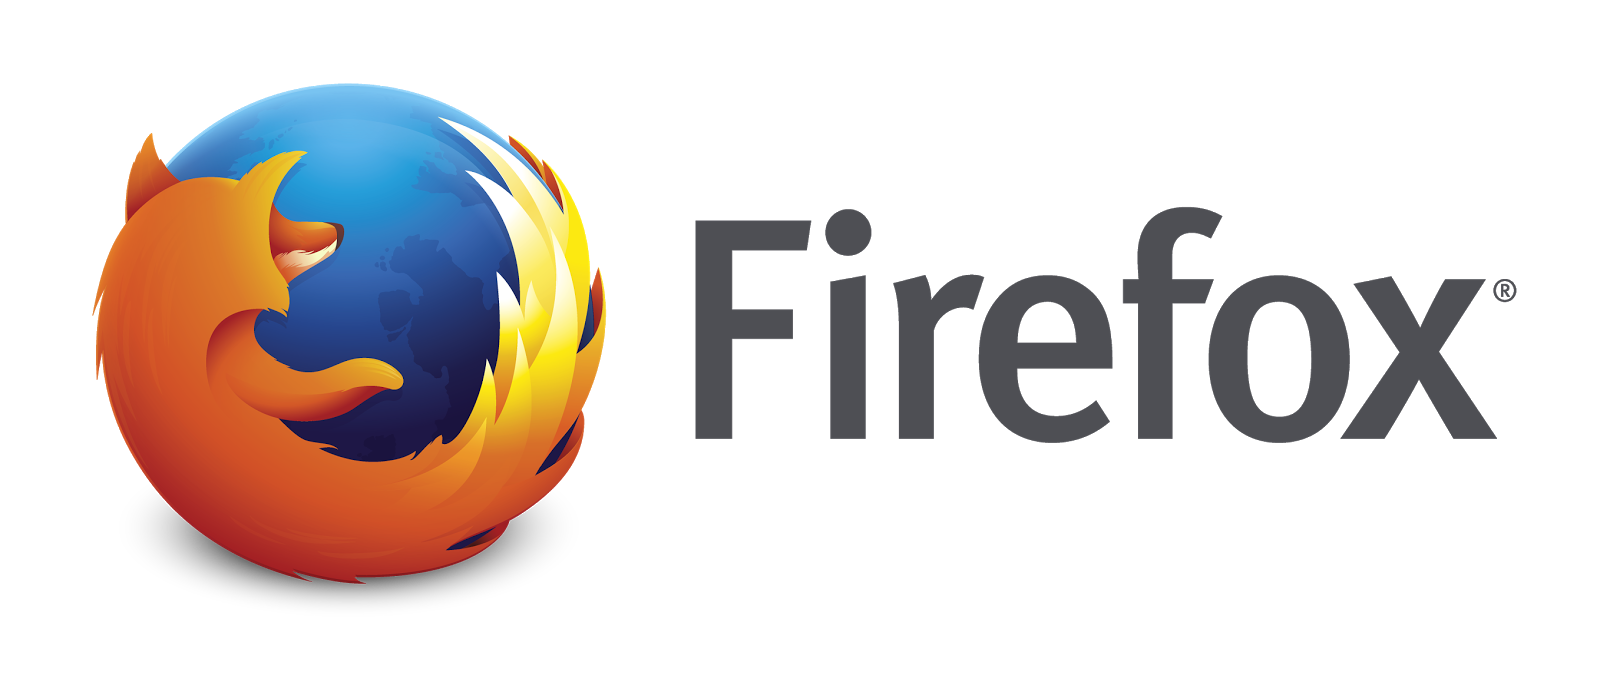 firefox 27.0.1